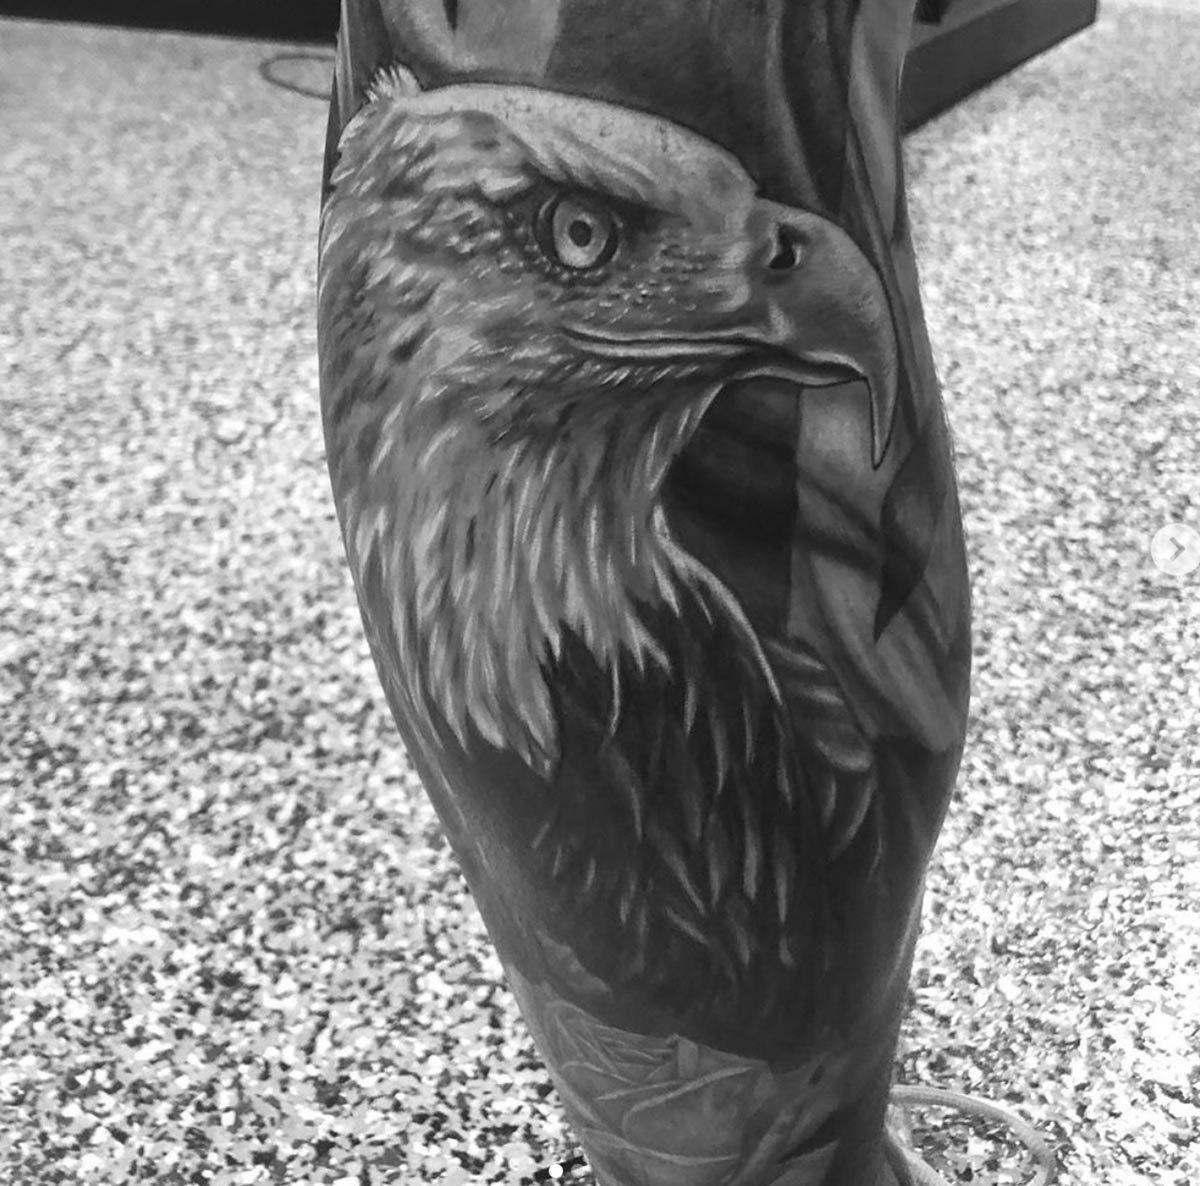 Latest Eagle Tattoos | Find Eagle Tattoos